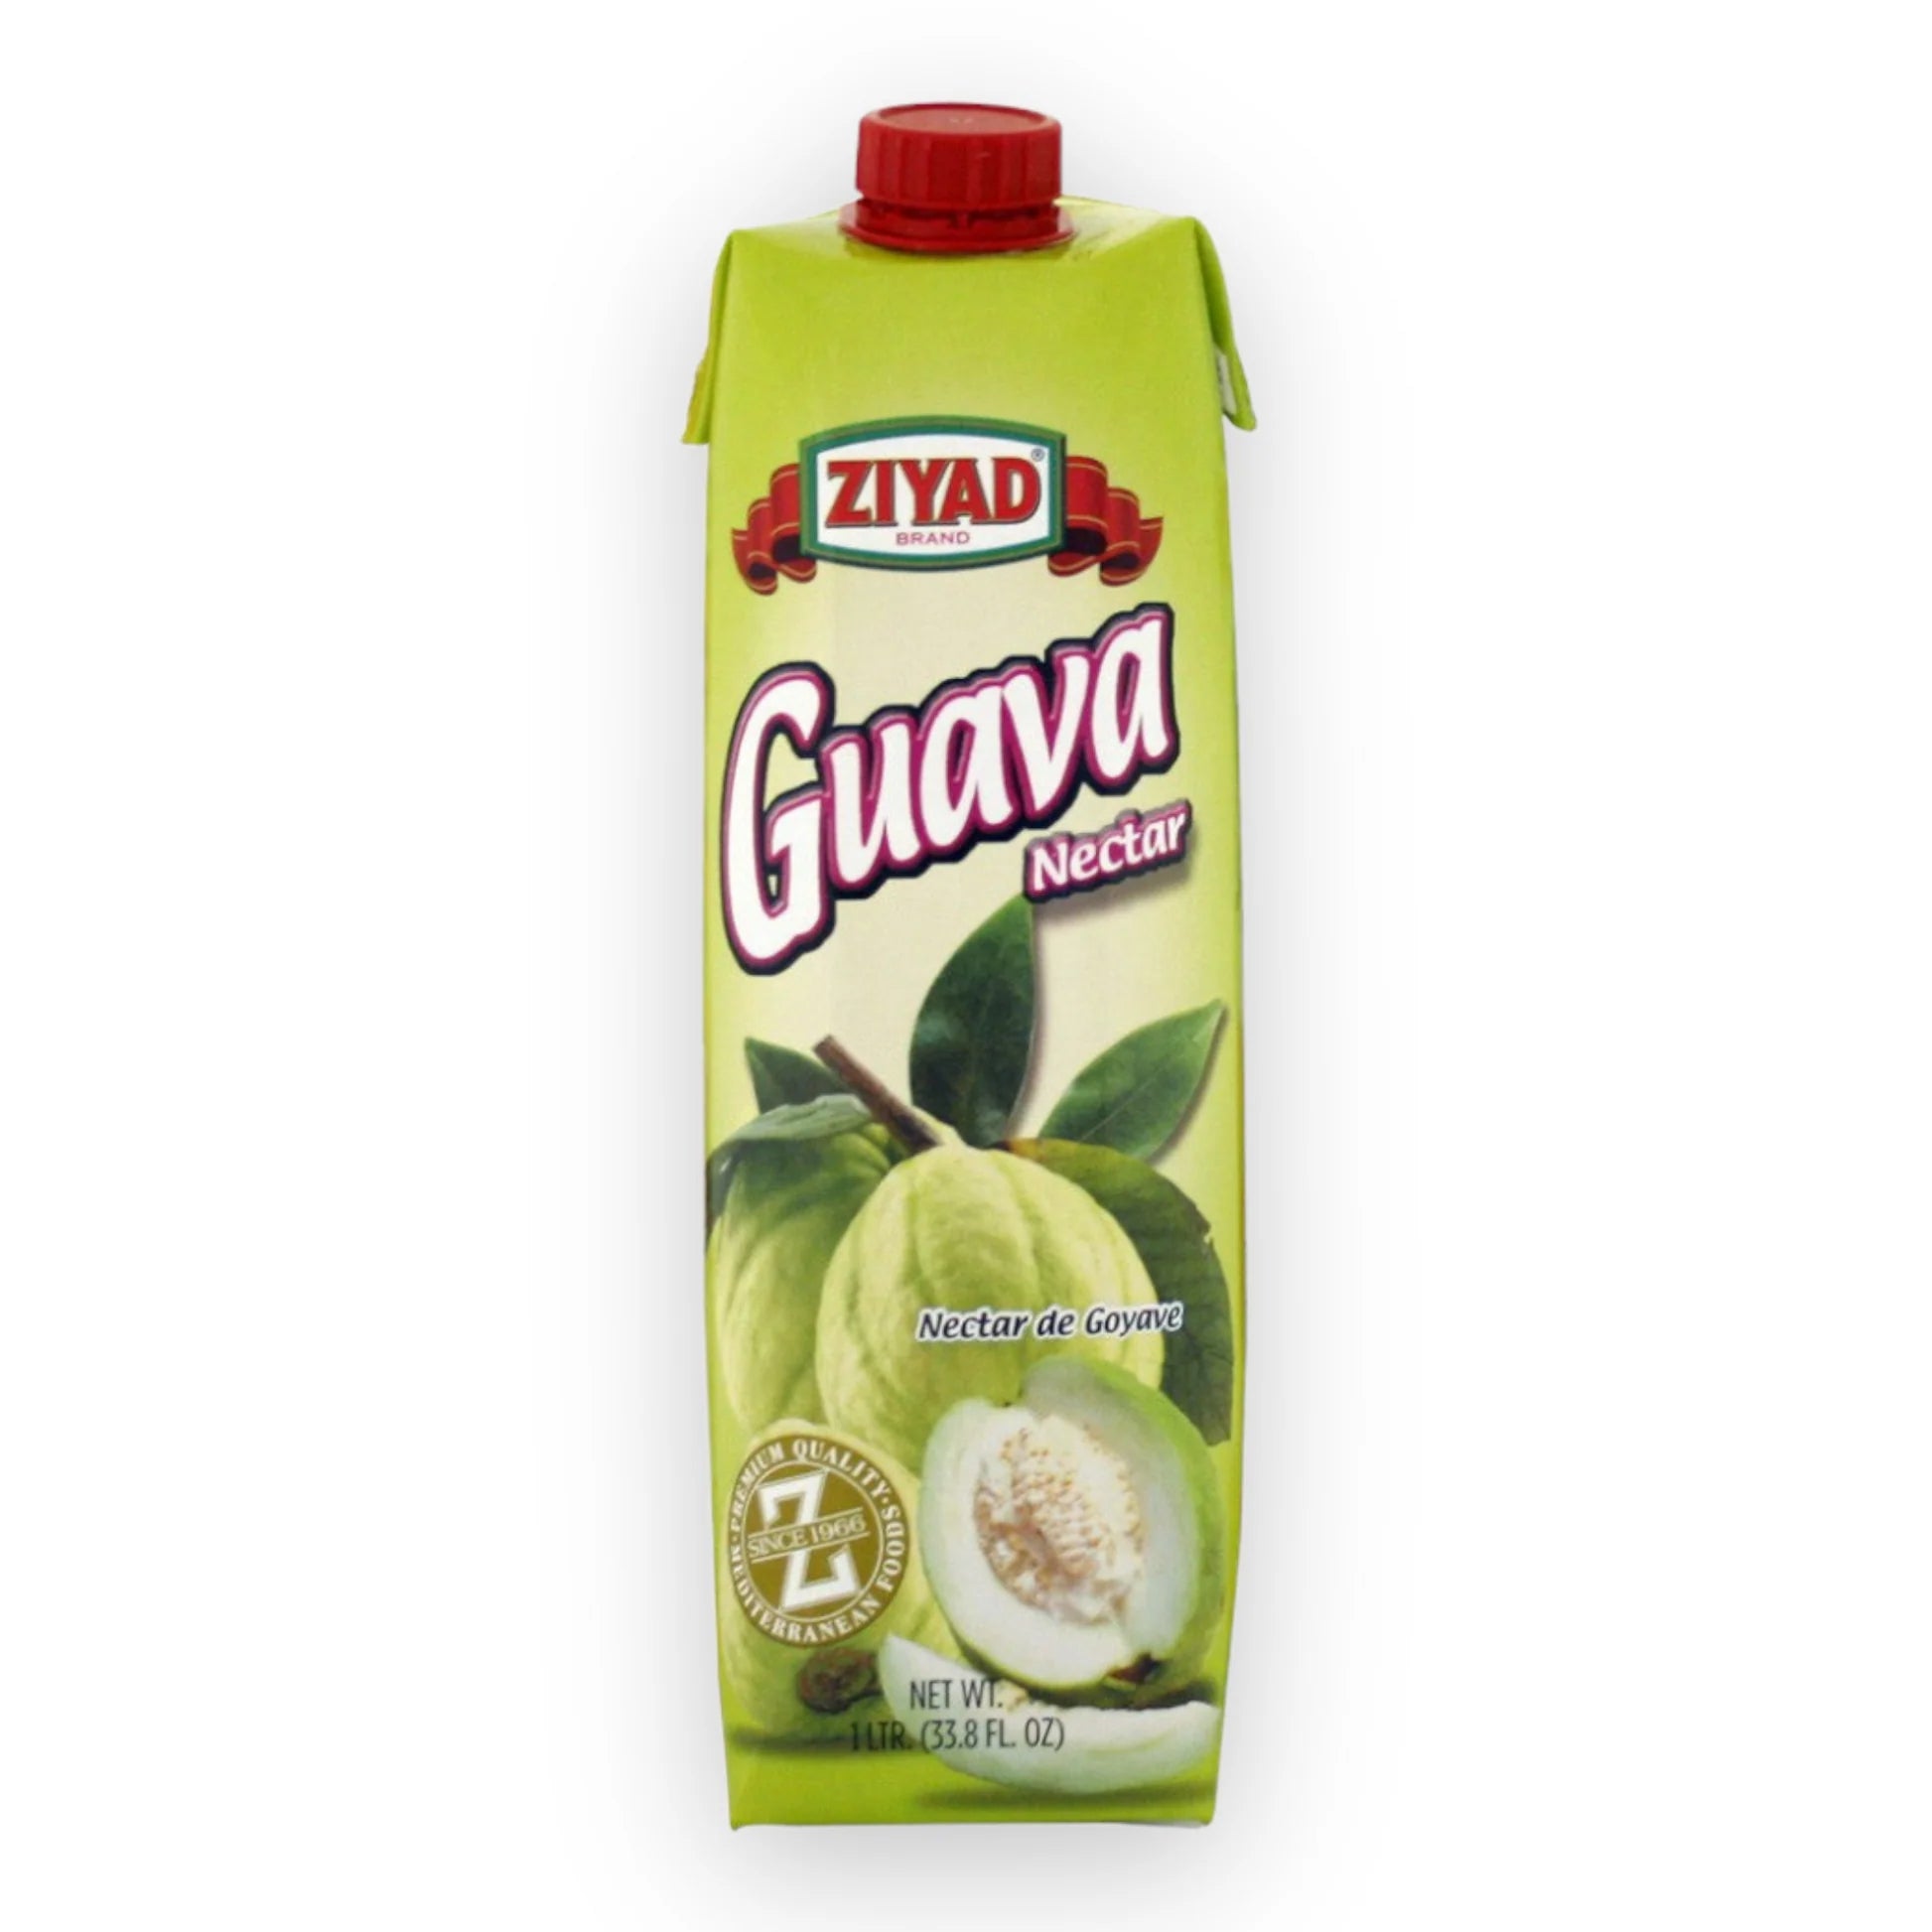 ziyad-guava-nectar-1-ltr-33-8-oz